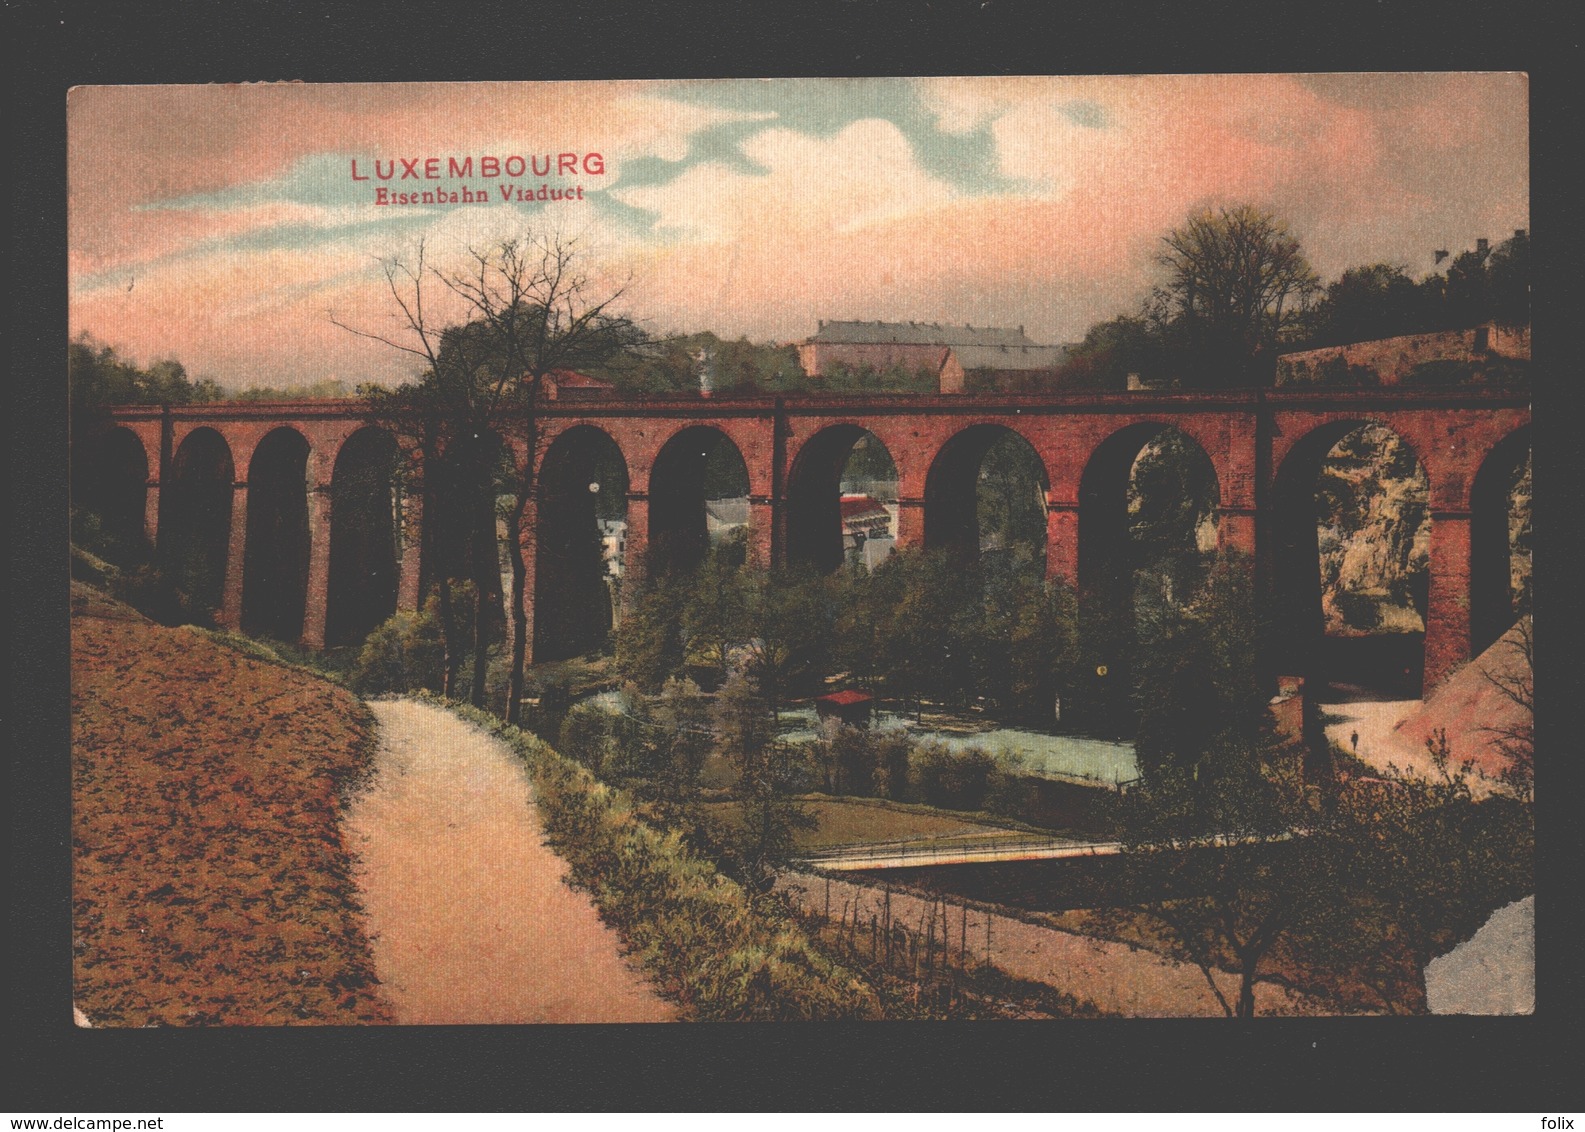 Luxembourg - Eisenbahn Viaduct - 1912 - Luxembourg - Ville